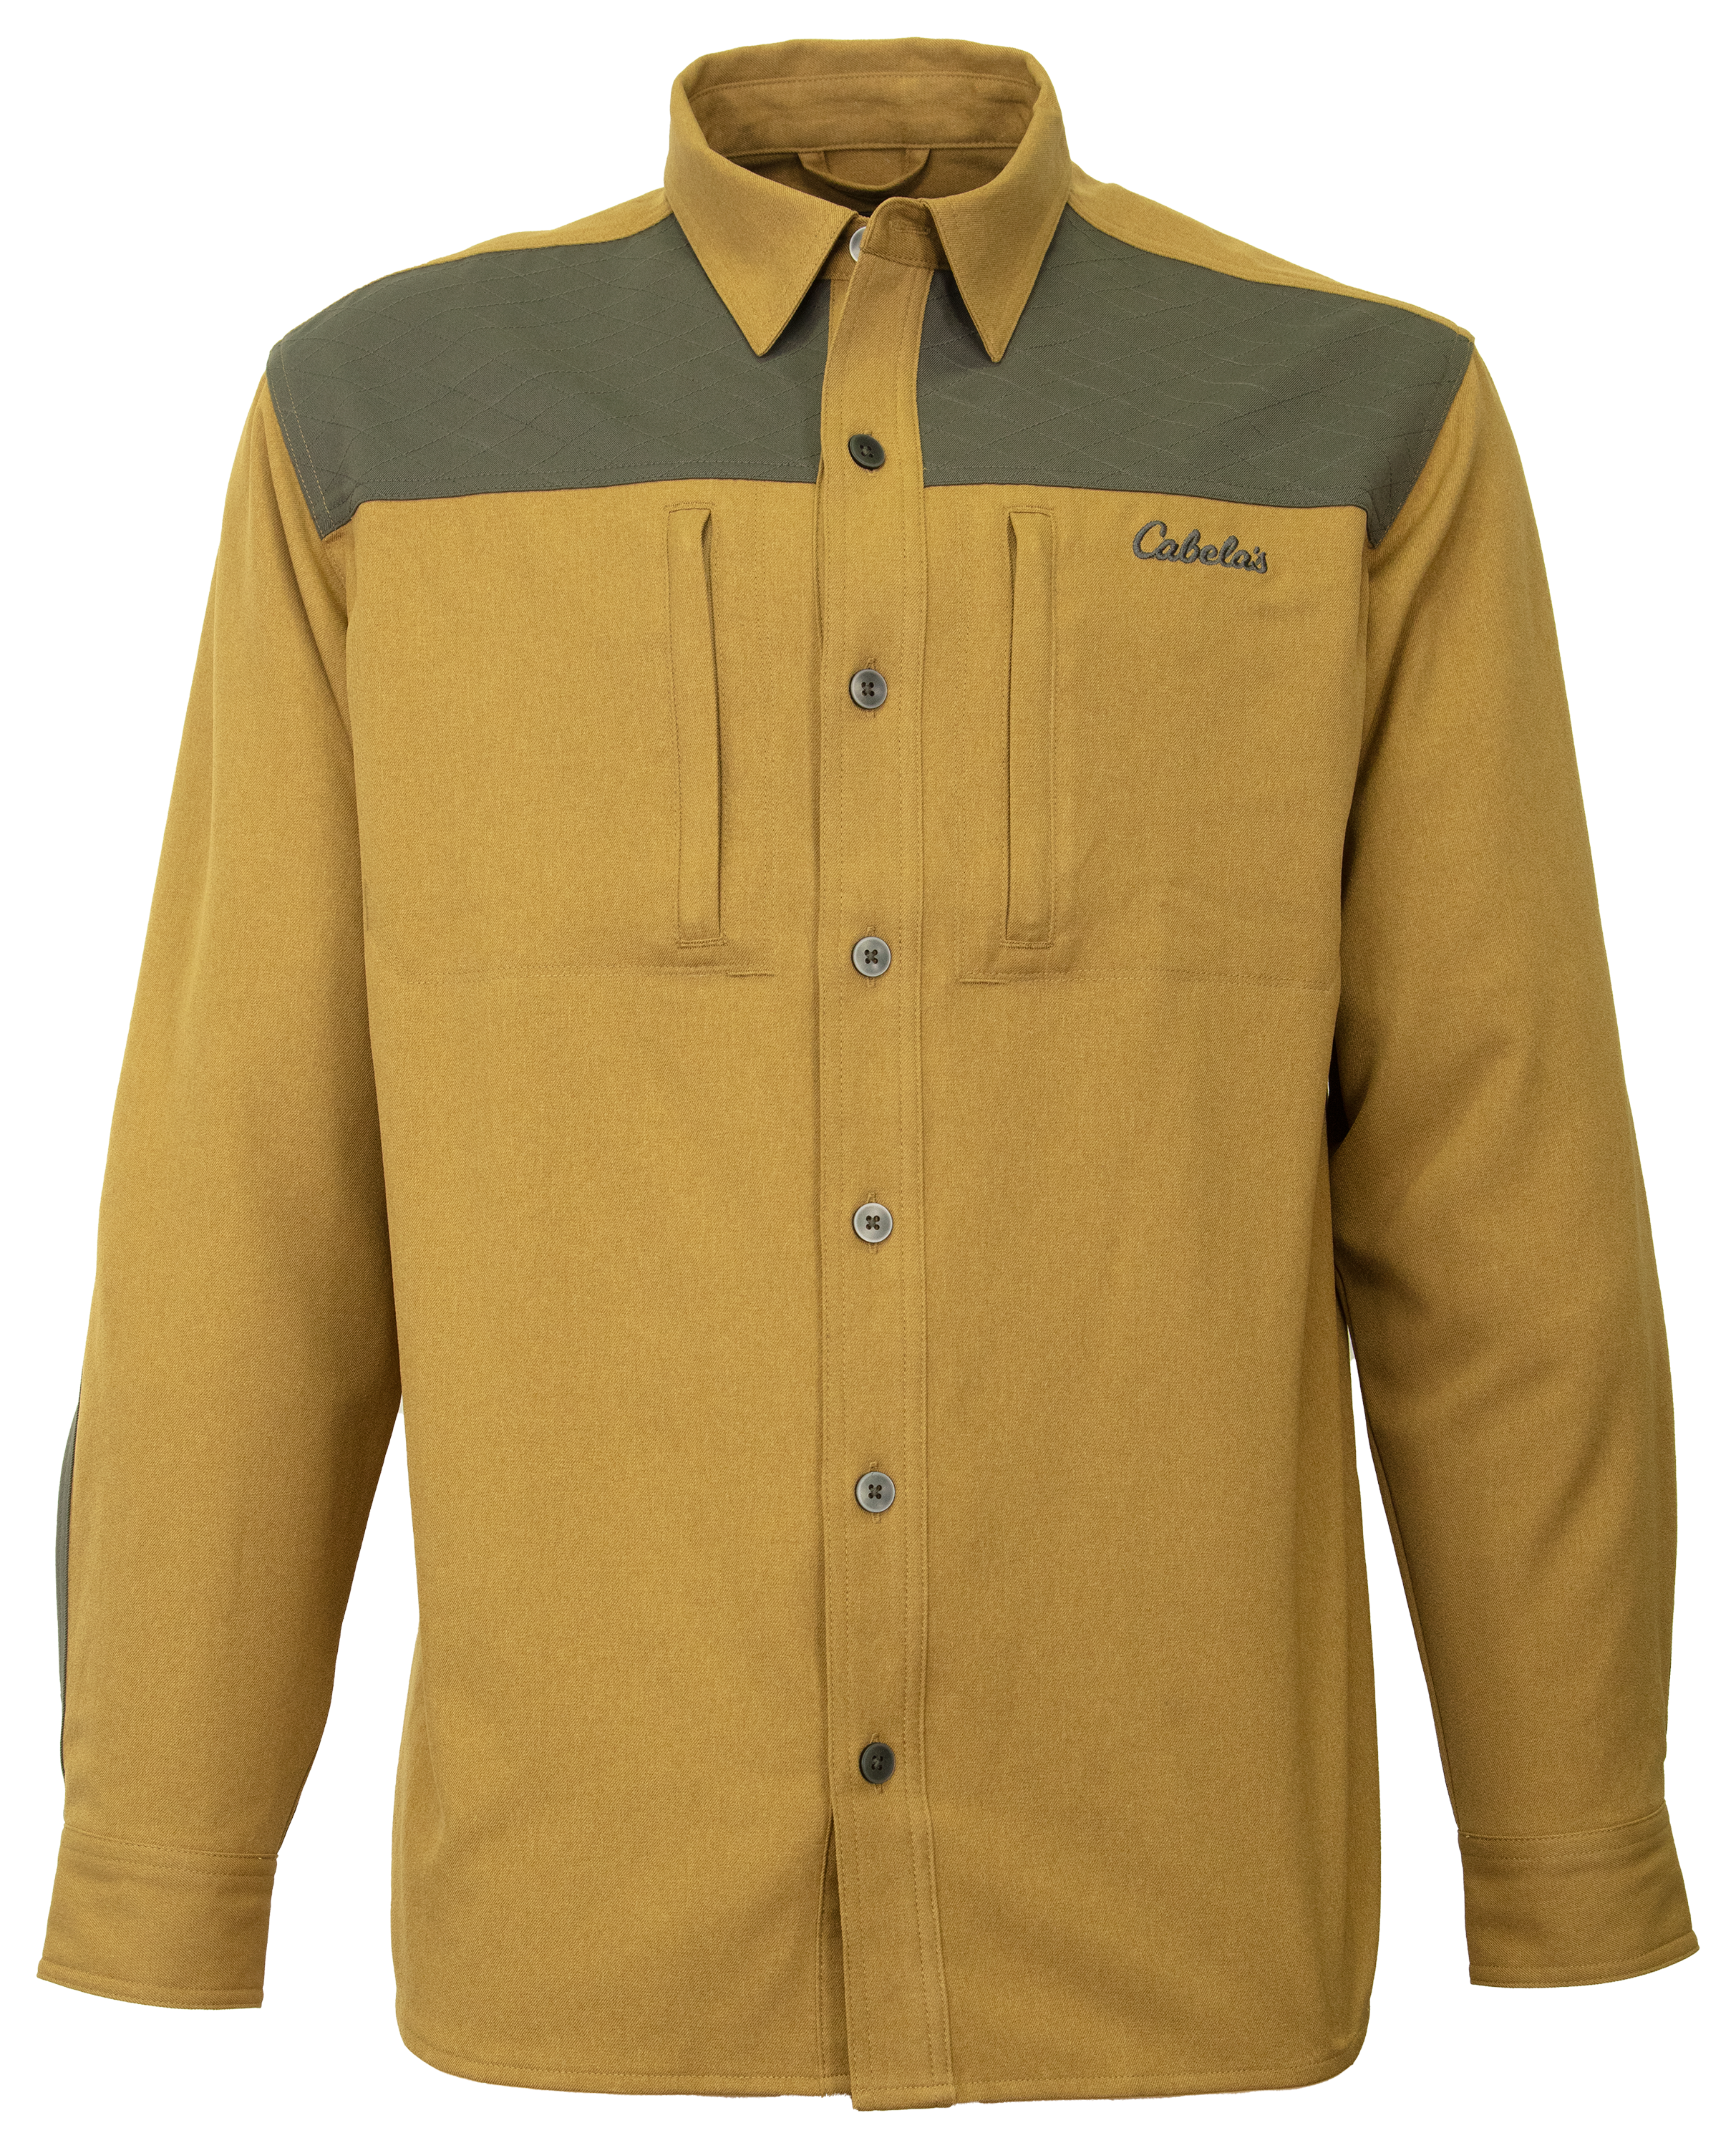 Cabela's Insulated Puffy Camo Vest for Men - TrueTimber Prairie - M